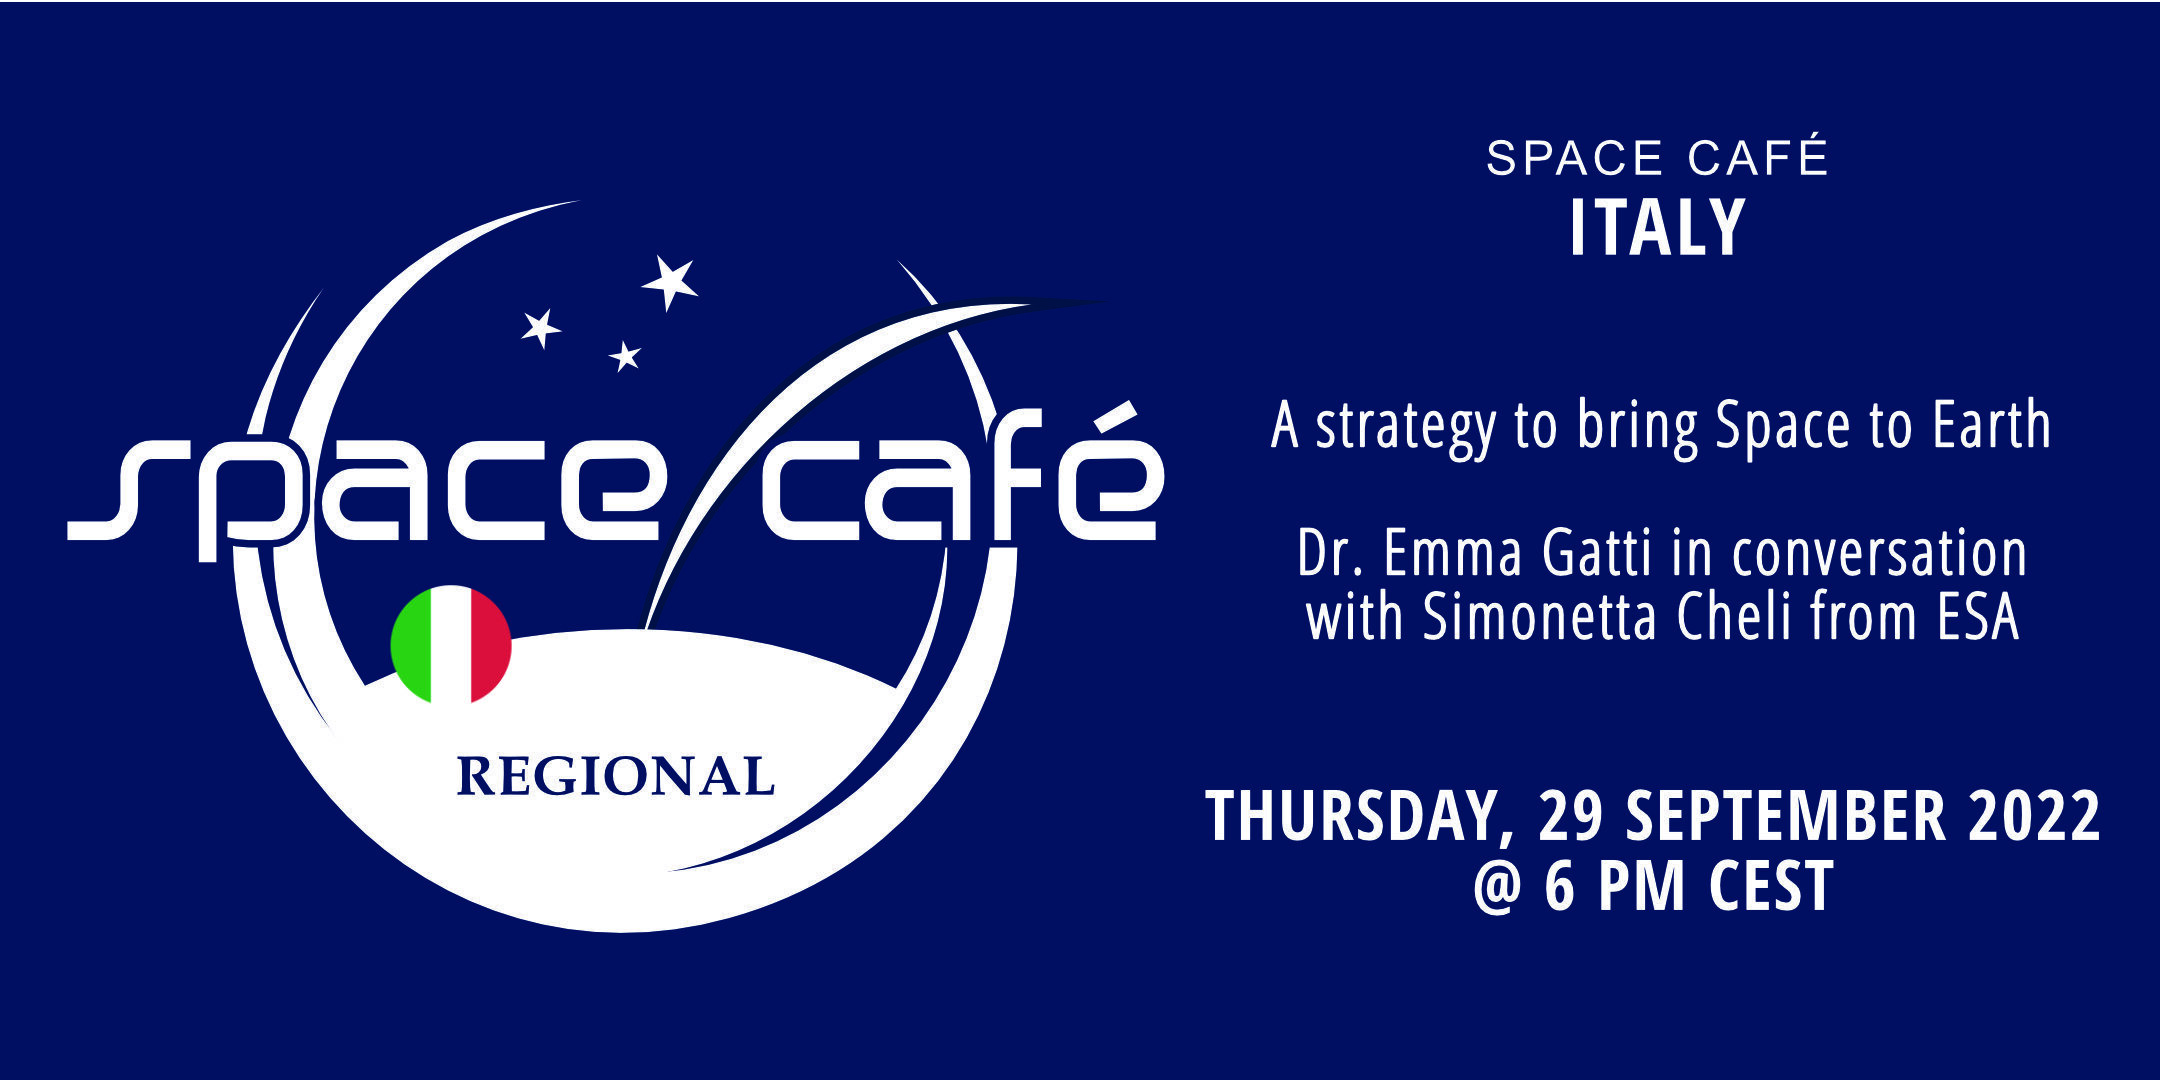 Zarejestruj się już dziś w naszej Space Café we Włoszech Napisane przez dr Emmę Gatti 29 września 2022 r.